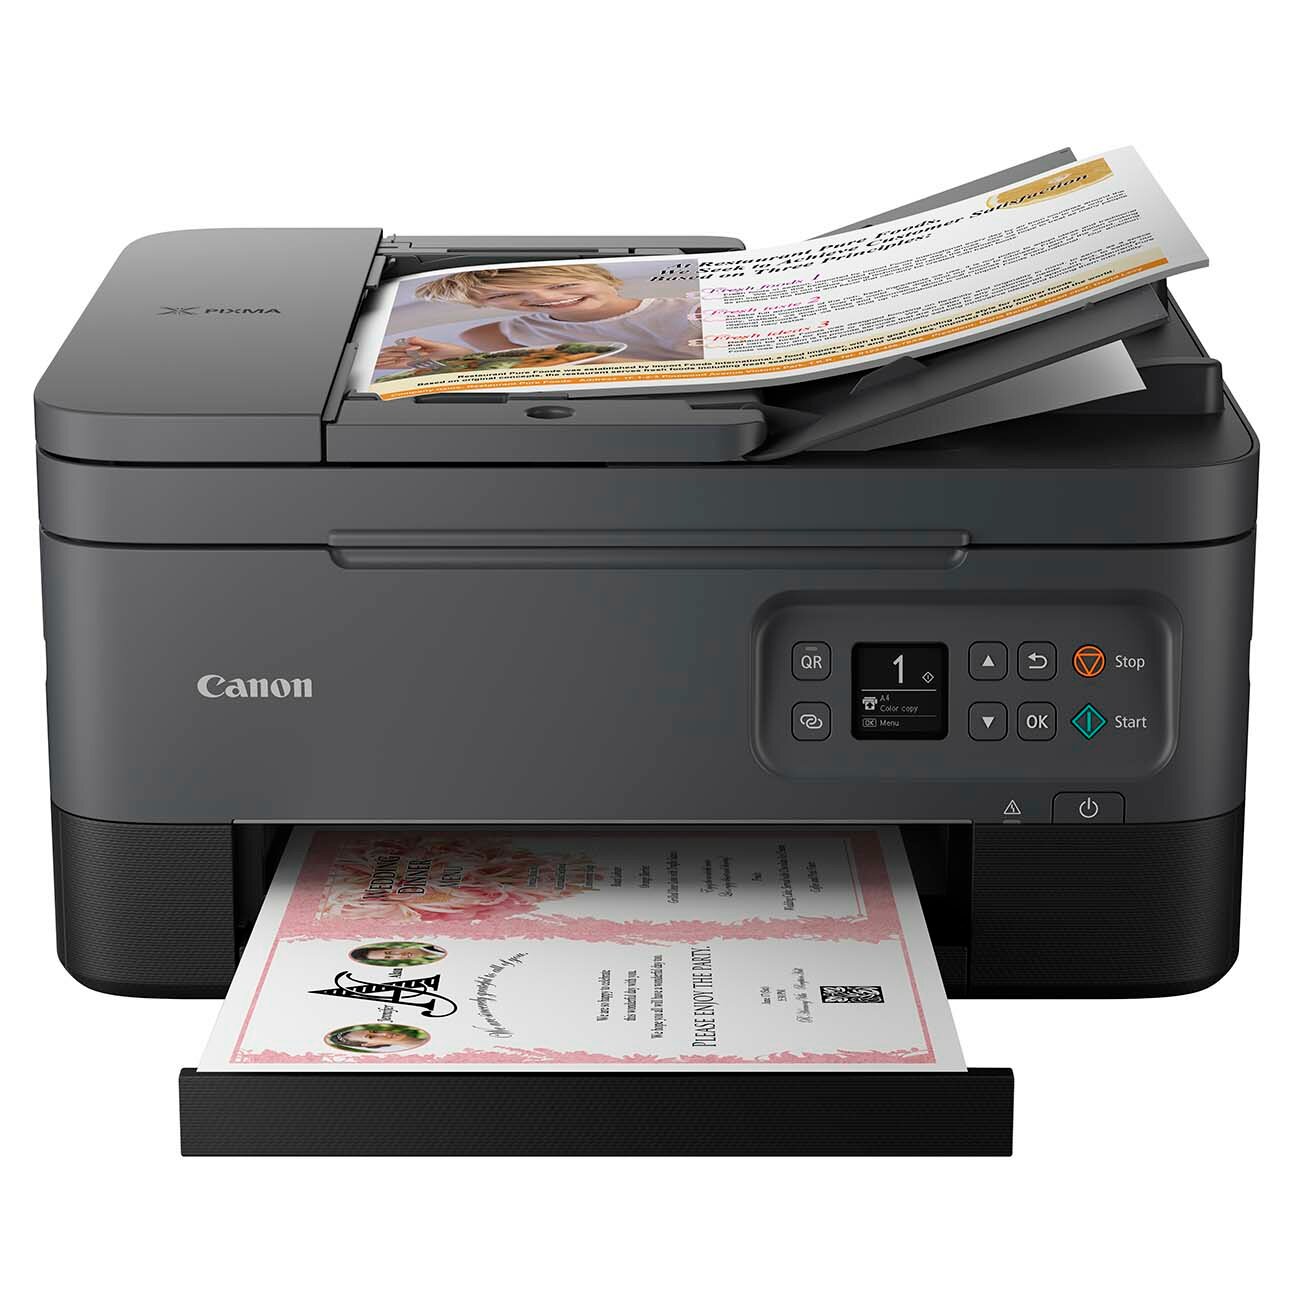 Принтер МФУ струйный цветной Canon PIXMA TS7440a, 3 в 1, сканер и копир распечатка на бумаге А4, цветная печать 6 стр/мин, черно-белая 13, разрешение для печати 4800x1200 dpi, черный